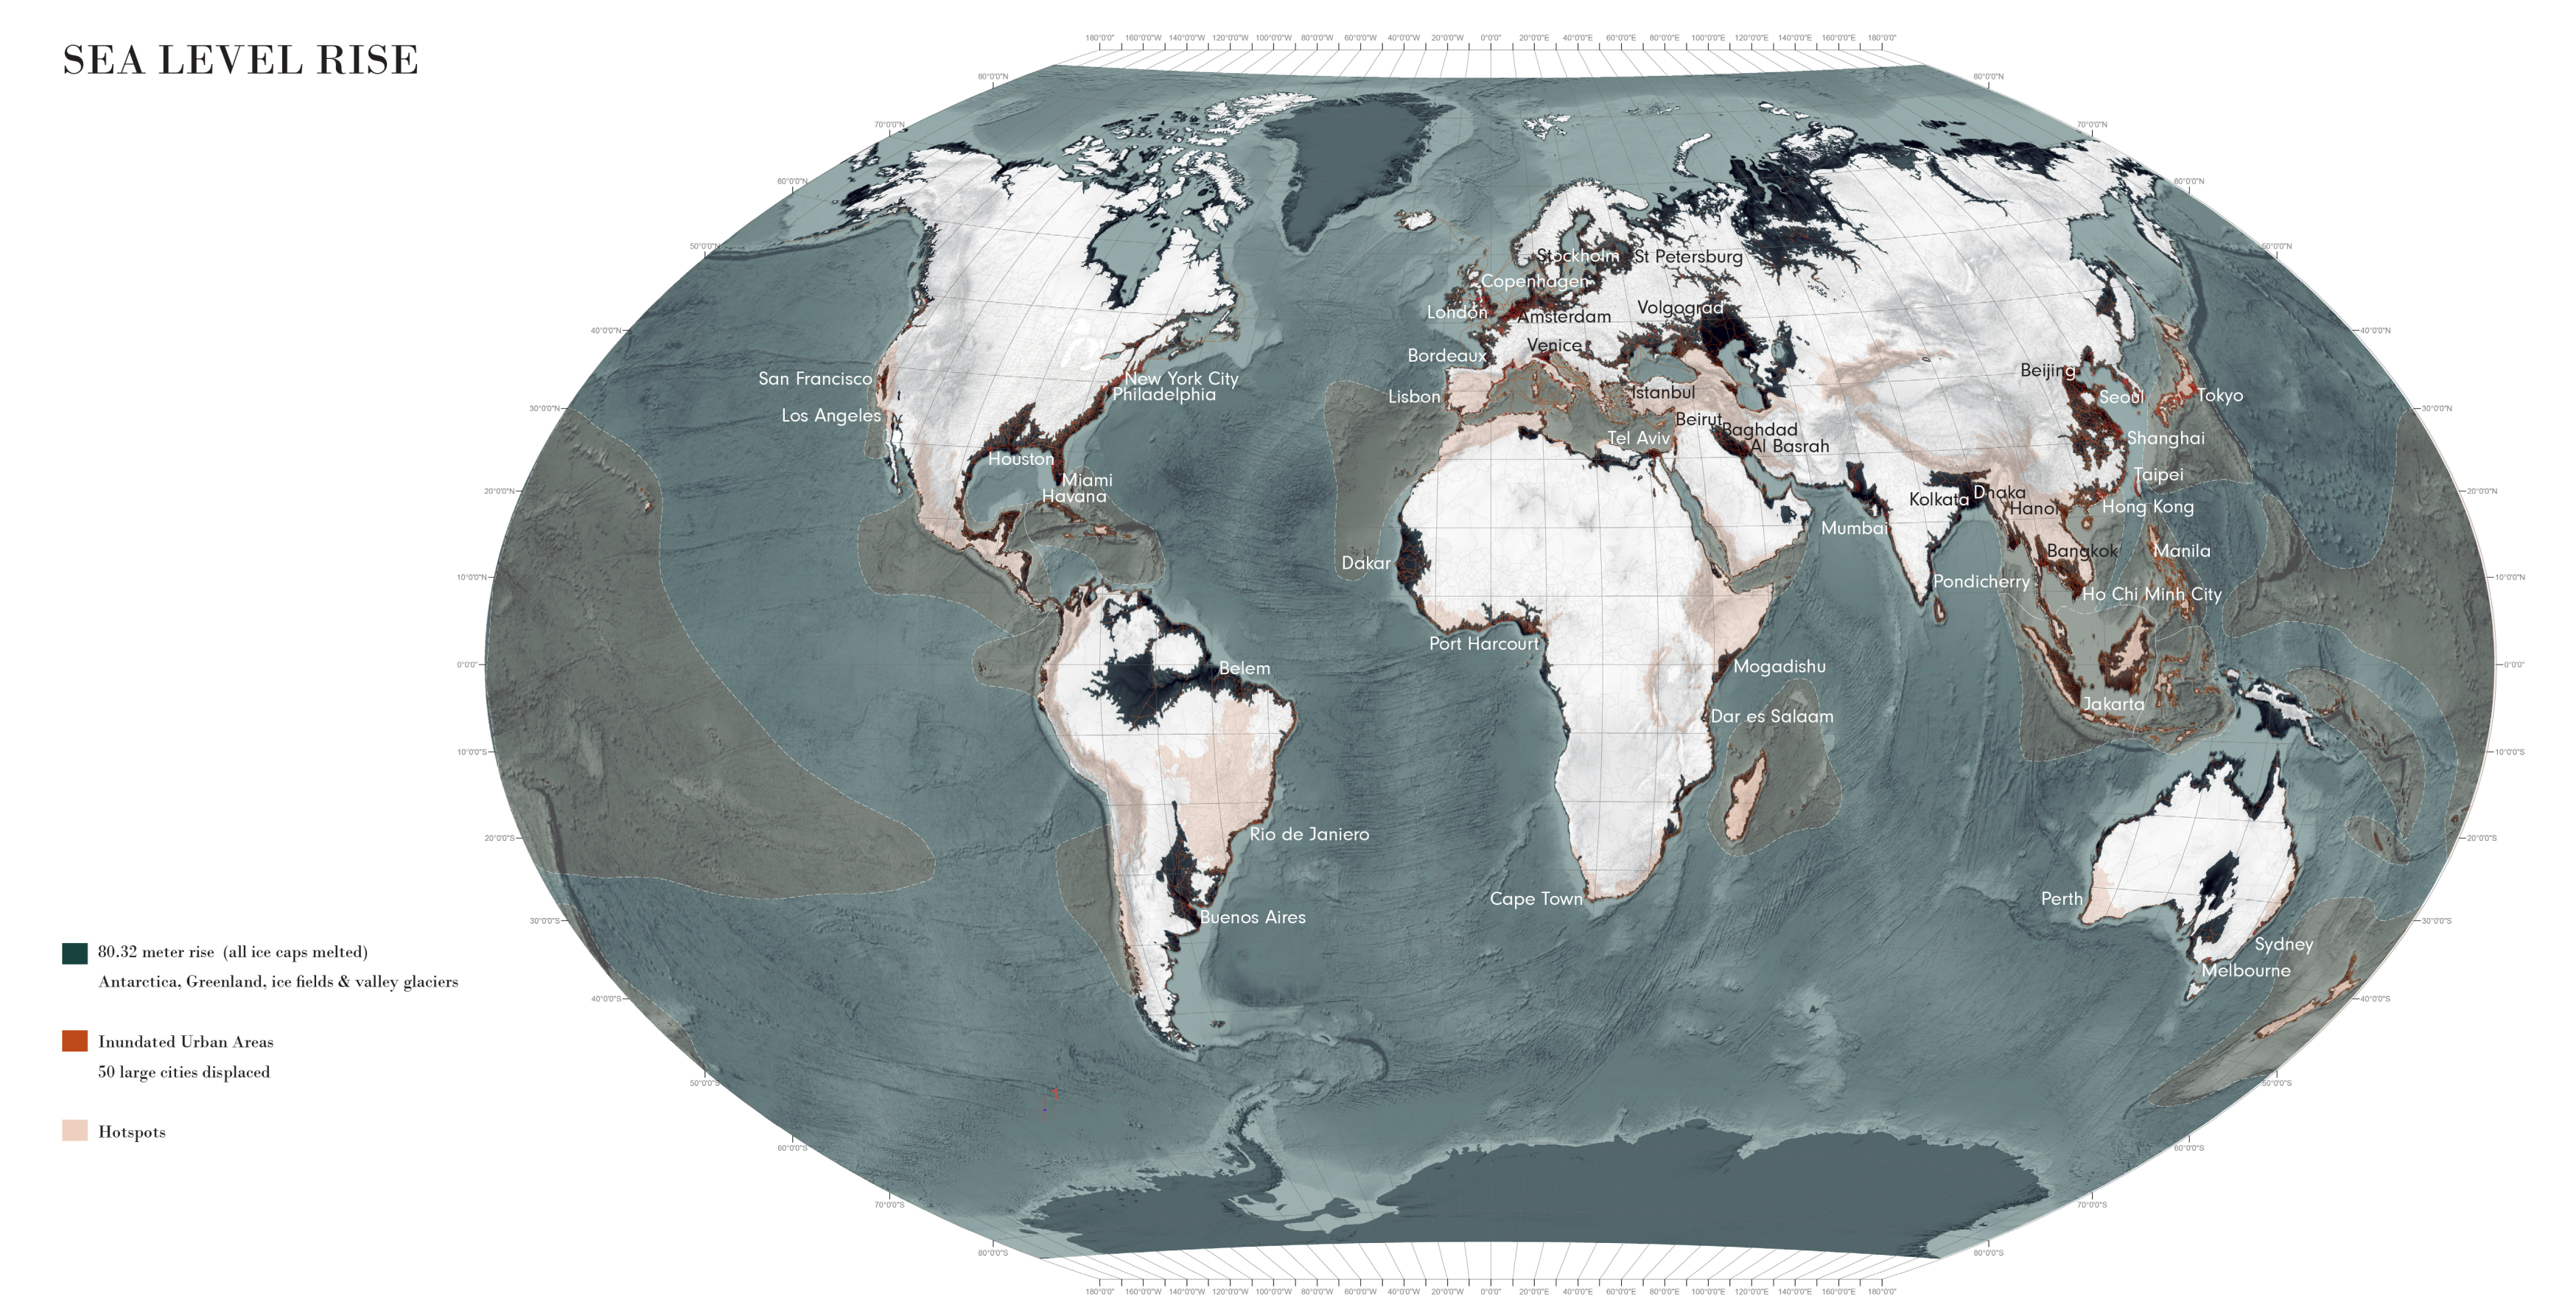 Um mapa de terra remanescente após um aumento de 80 metros no nível do mar